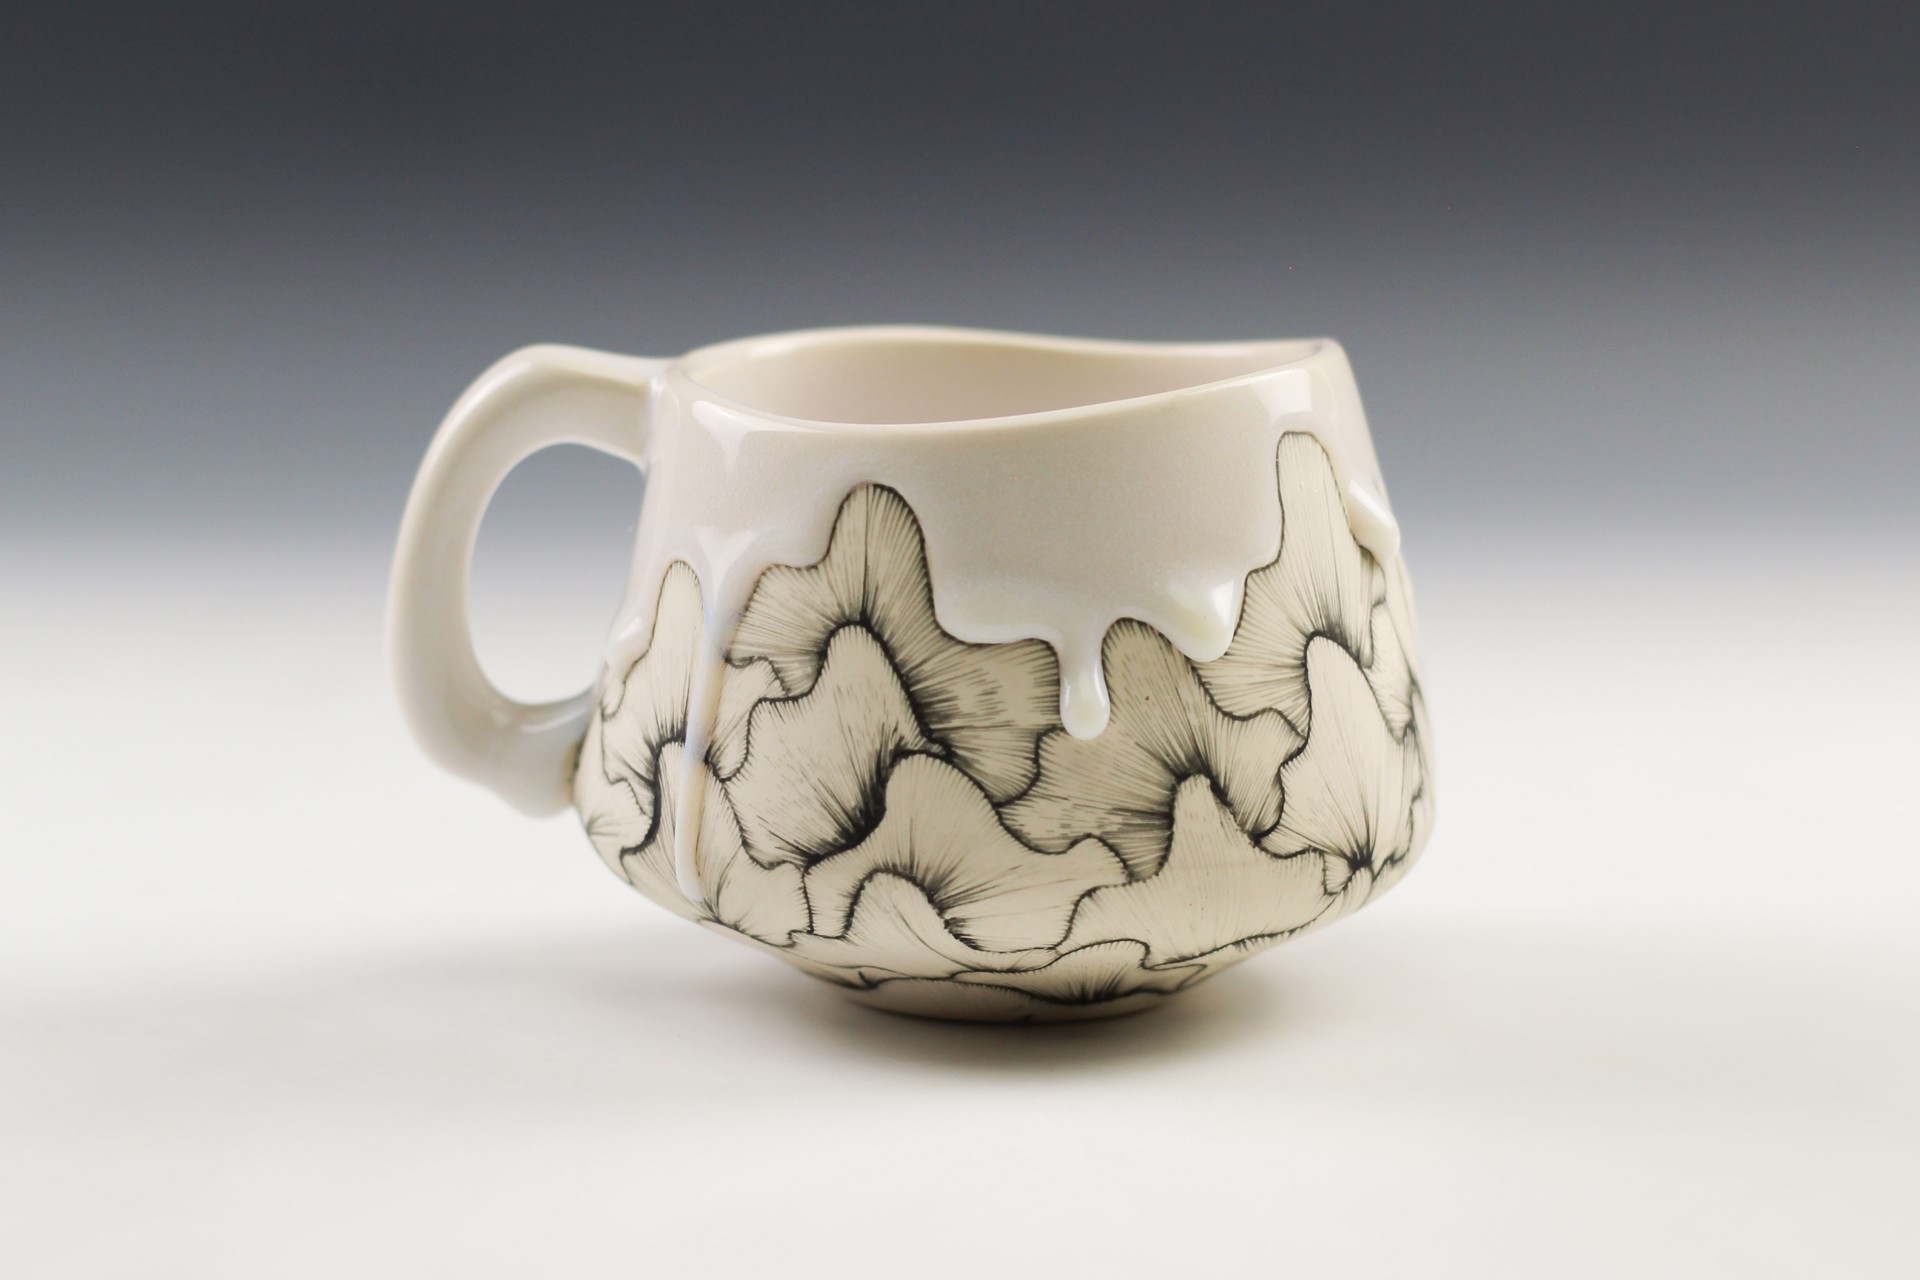 Large Mug by Noelle Hoover